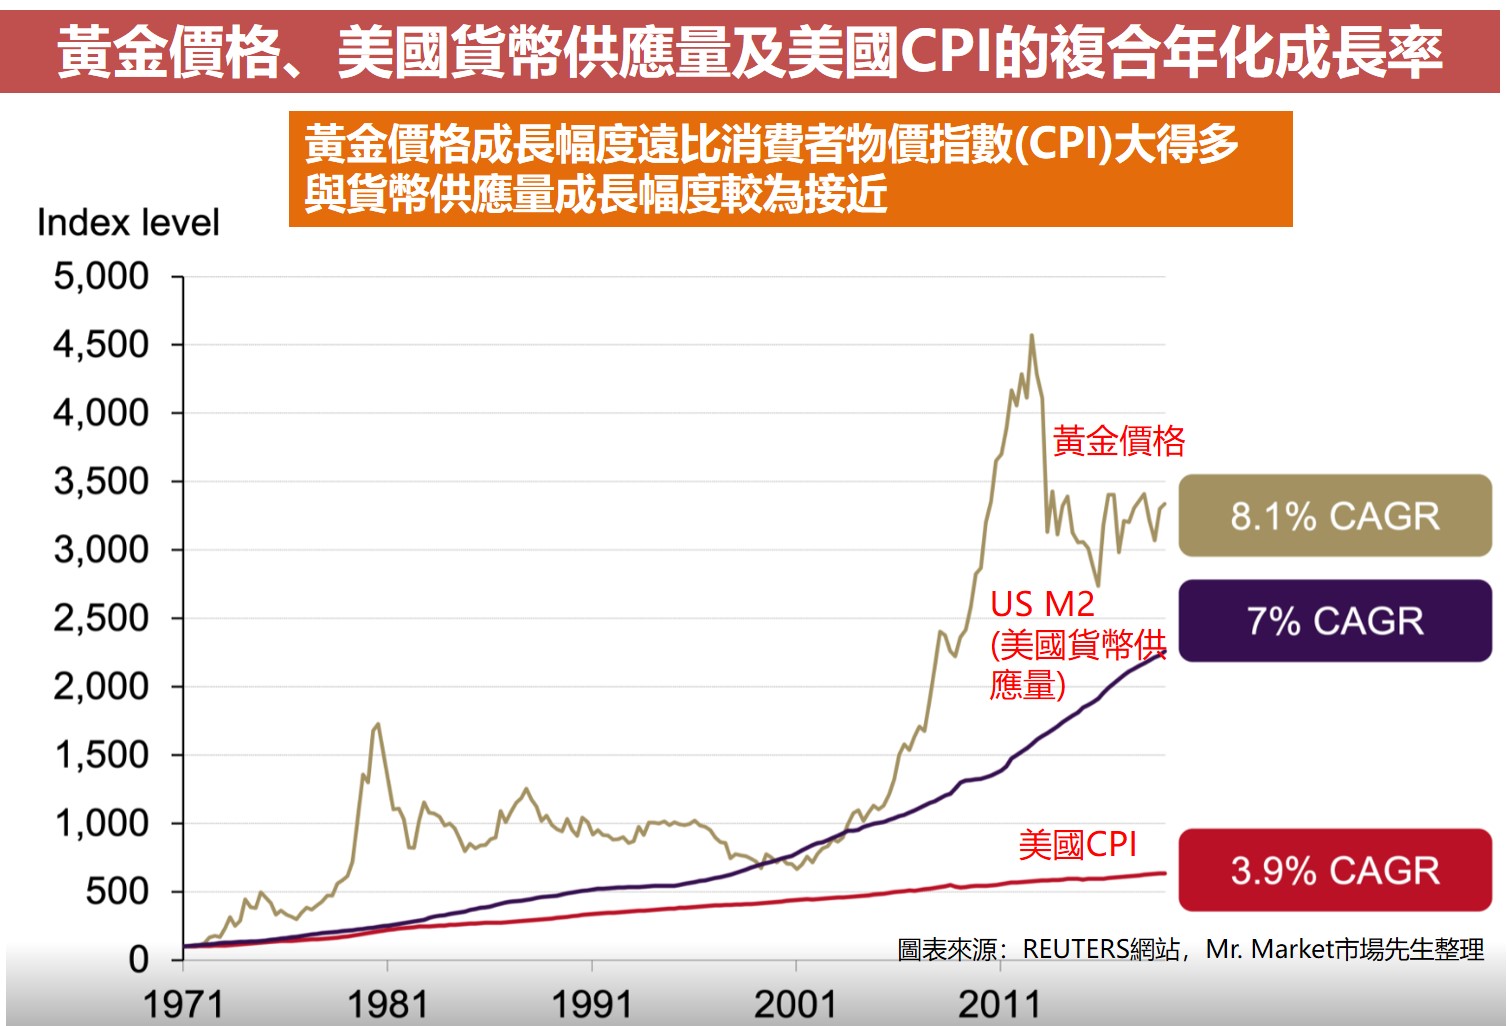 黃金價格、美國貨幣供應量及美國CPI的複合年化成長率